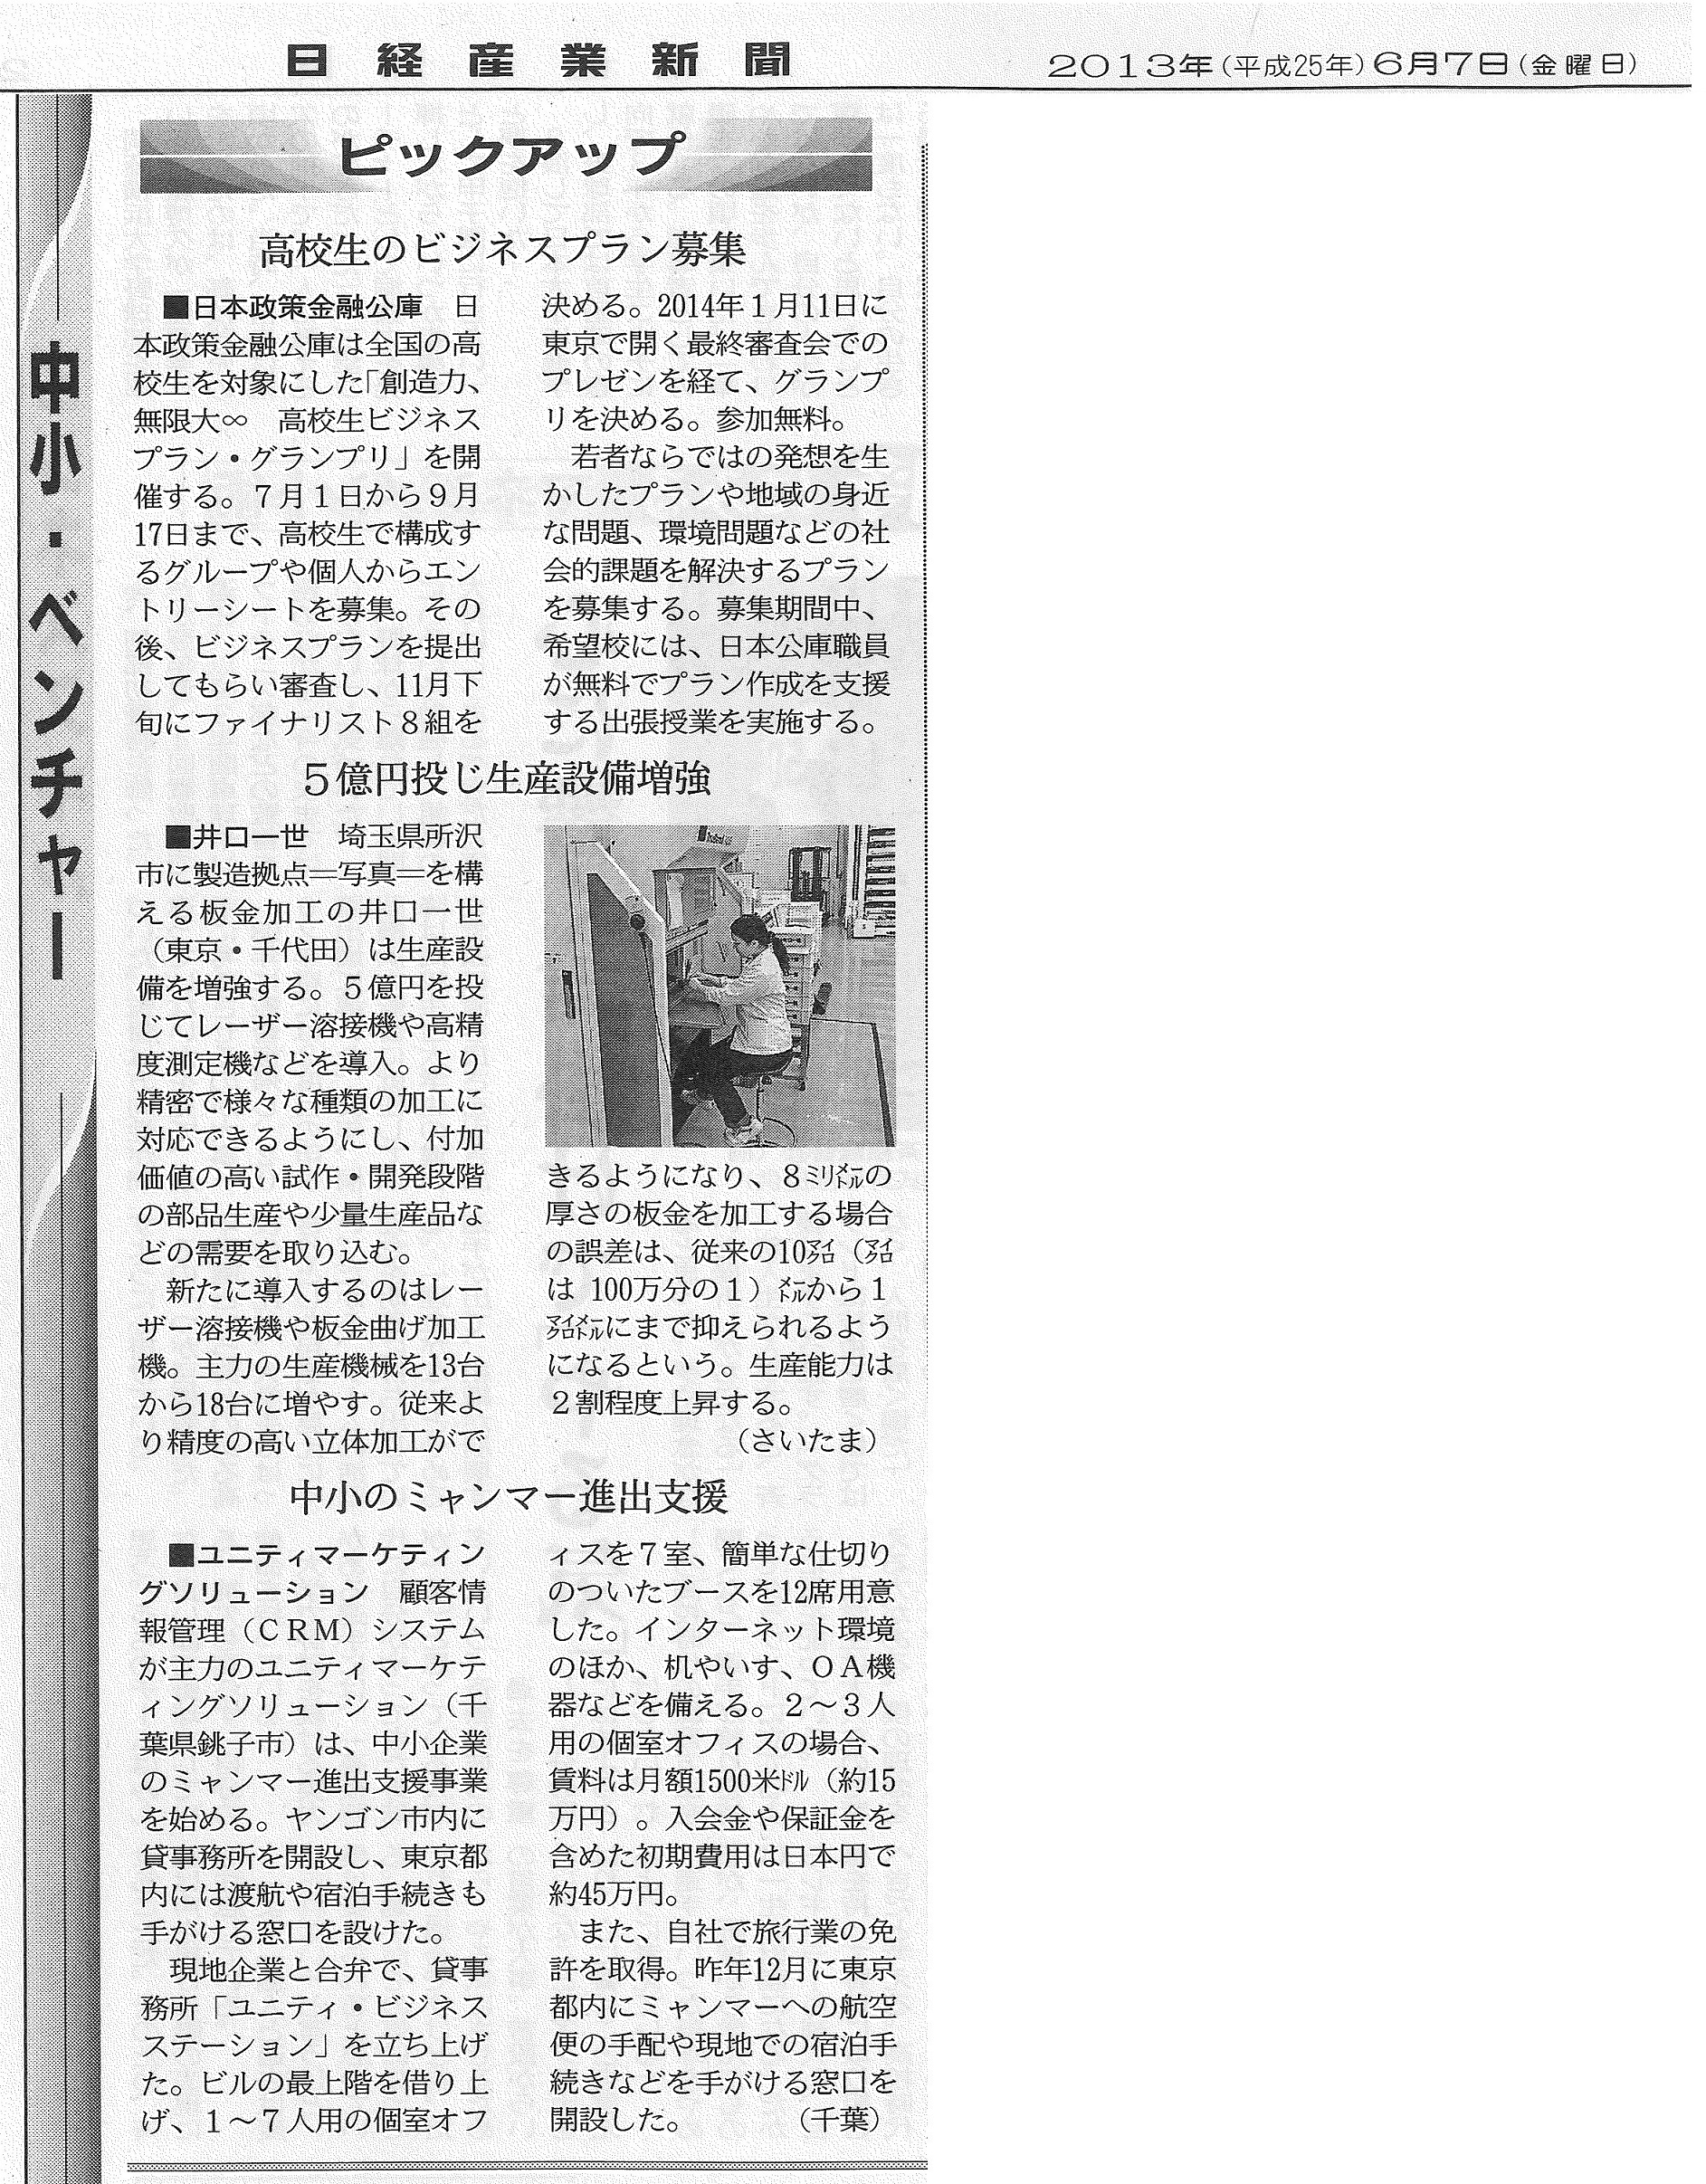 2013年6月7日　日経産業新聞にて、弊社が紹介されました